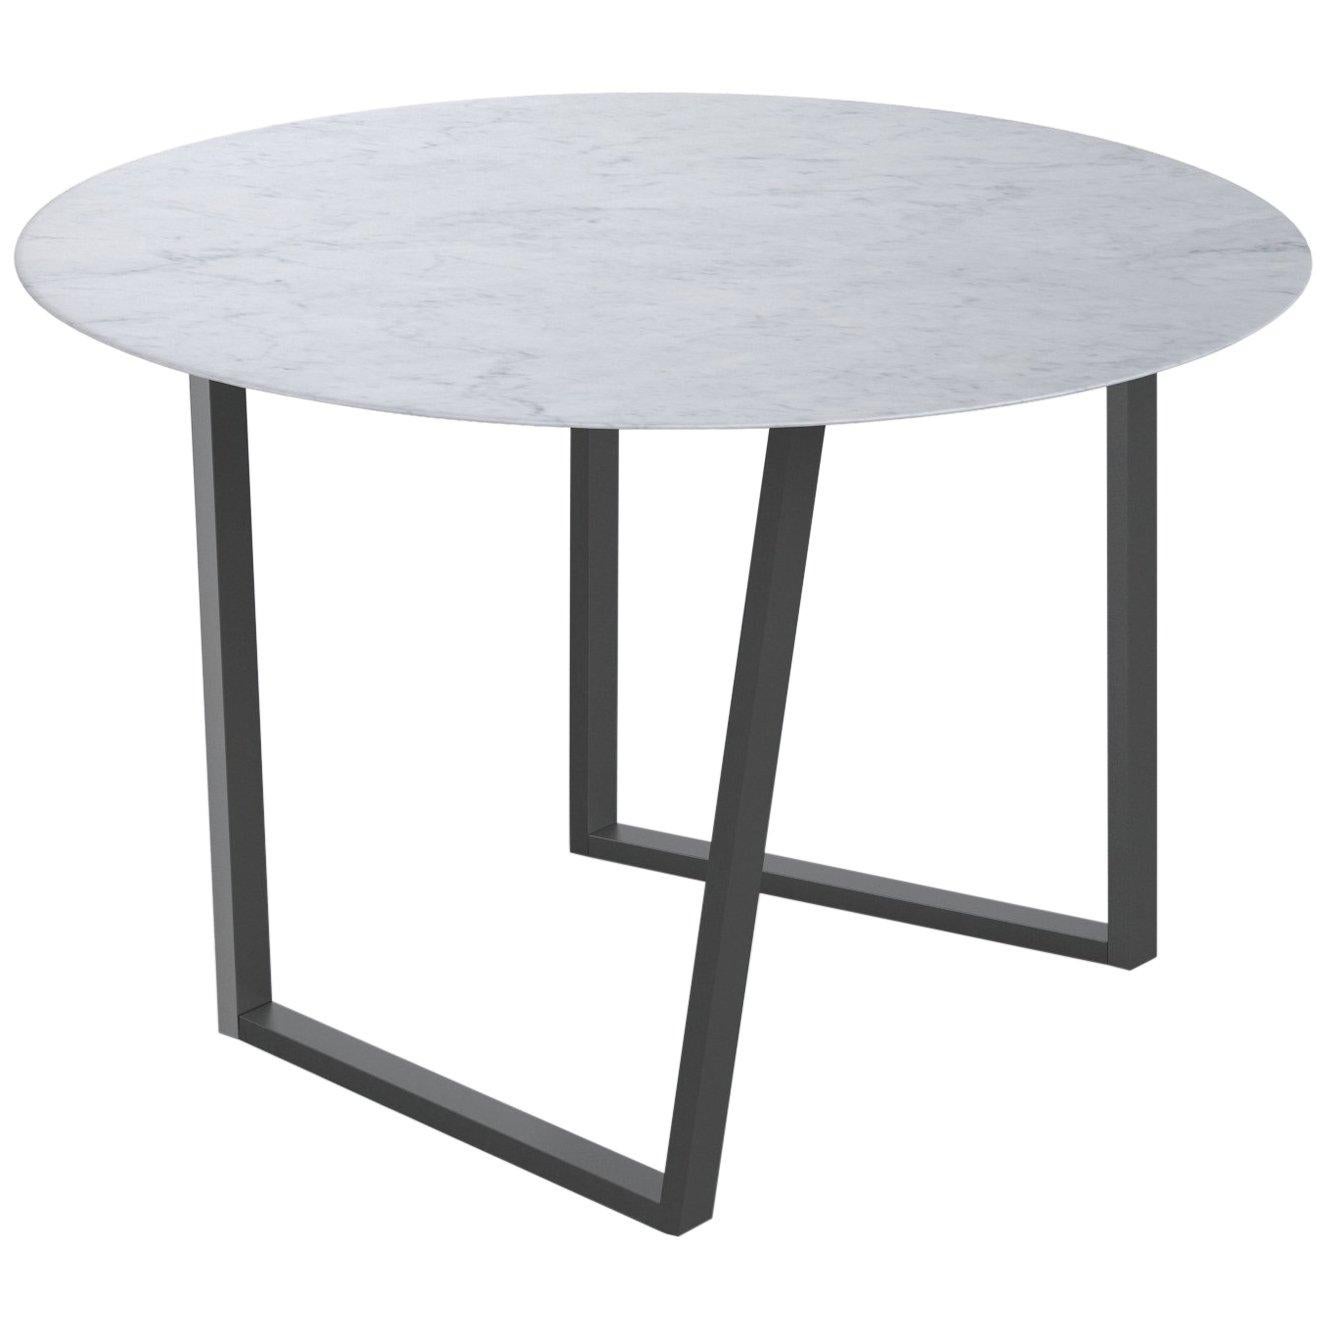 For Sale: White (Bianco Carrara) Salvatori Round Dritto Dining Table by Piero Lissoni